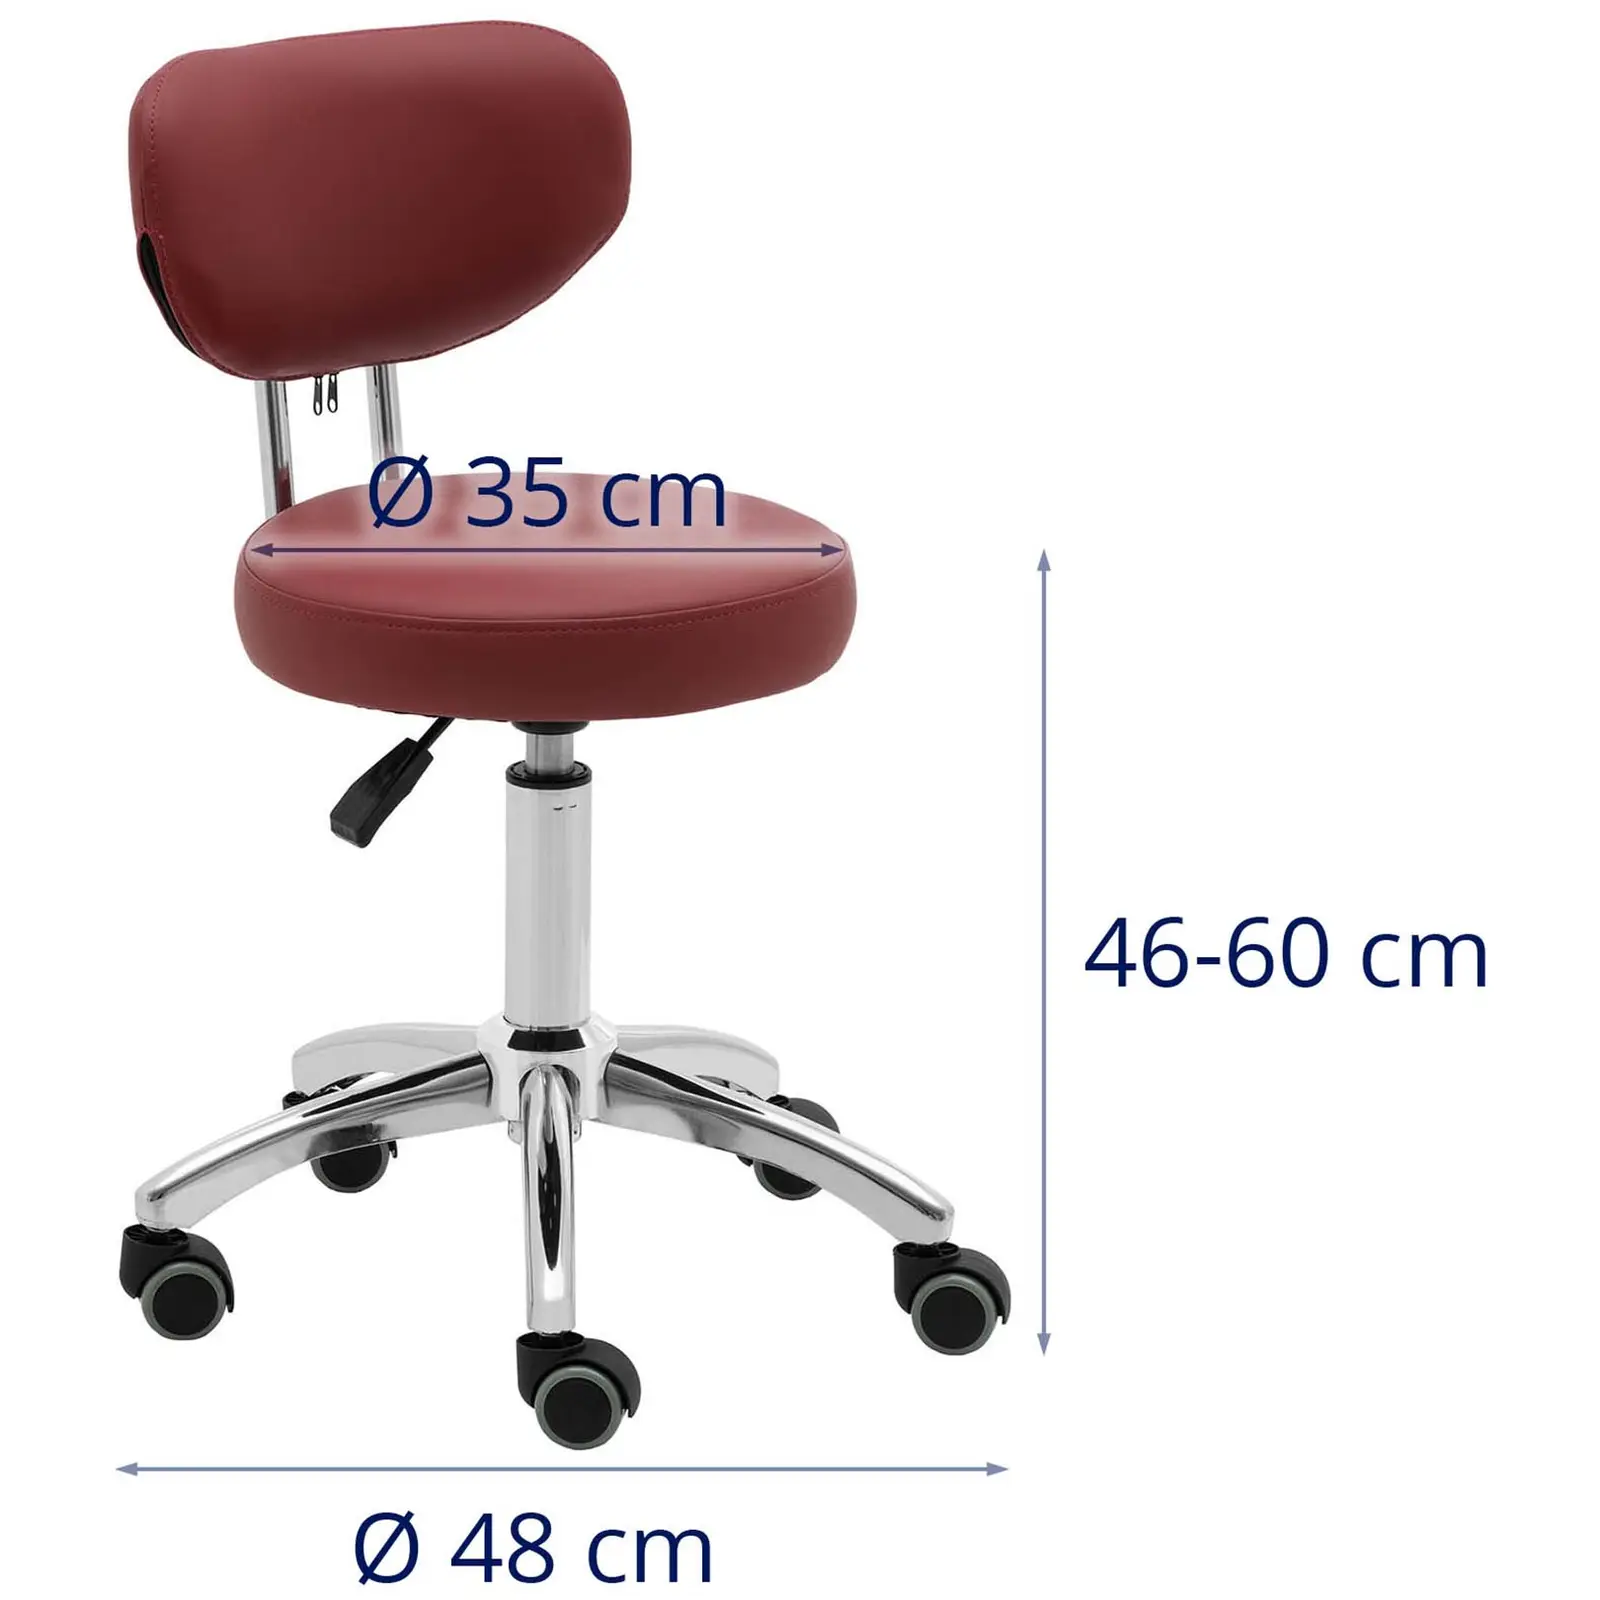 Arbetsstol med ryggstöd - 46 - 60 cm - 150 kg - Vinröd